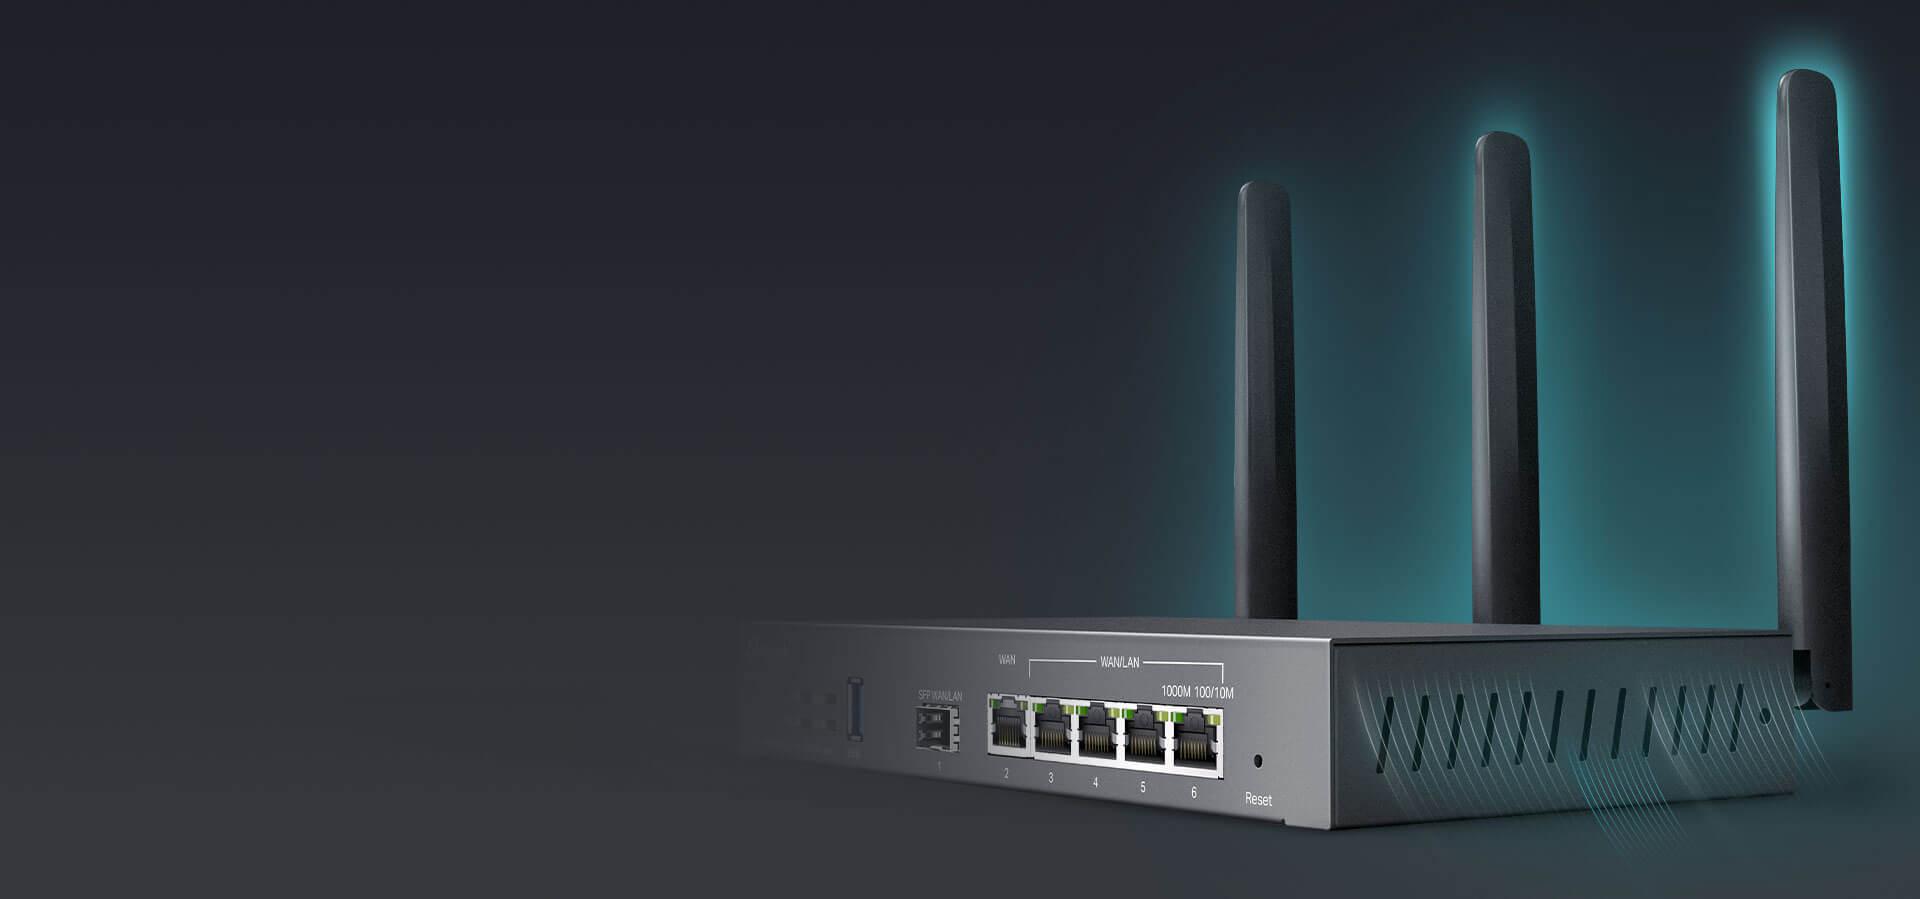 Router VPN Omada TP-Link ER706W - profesjonalne podzespoły budujące przyszłość Wi-Fi